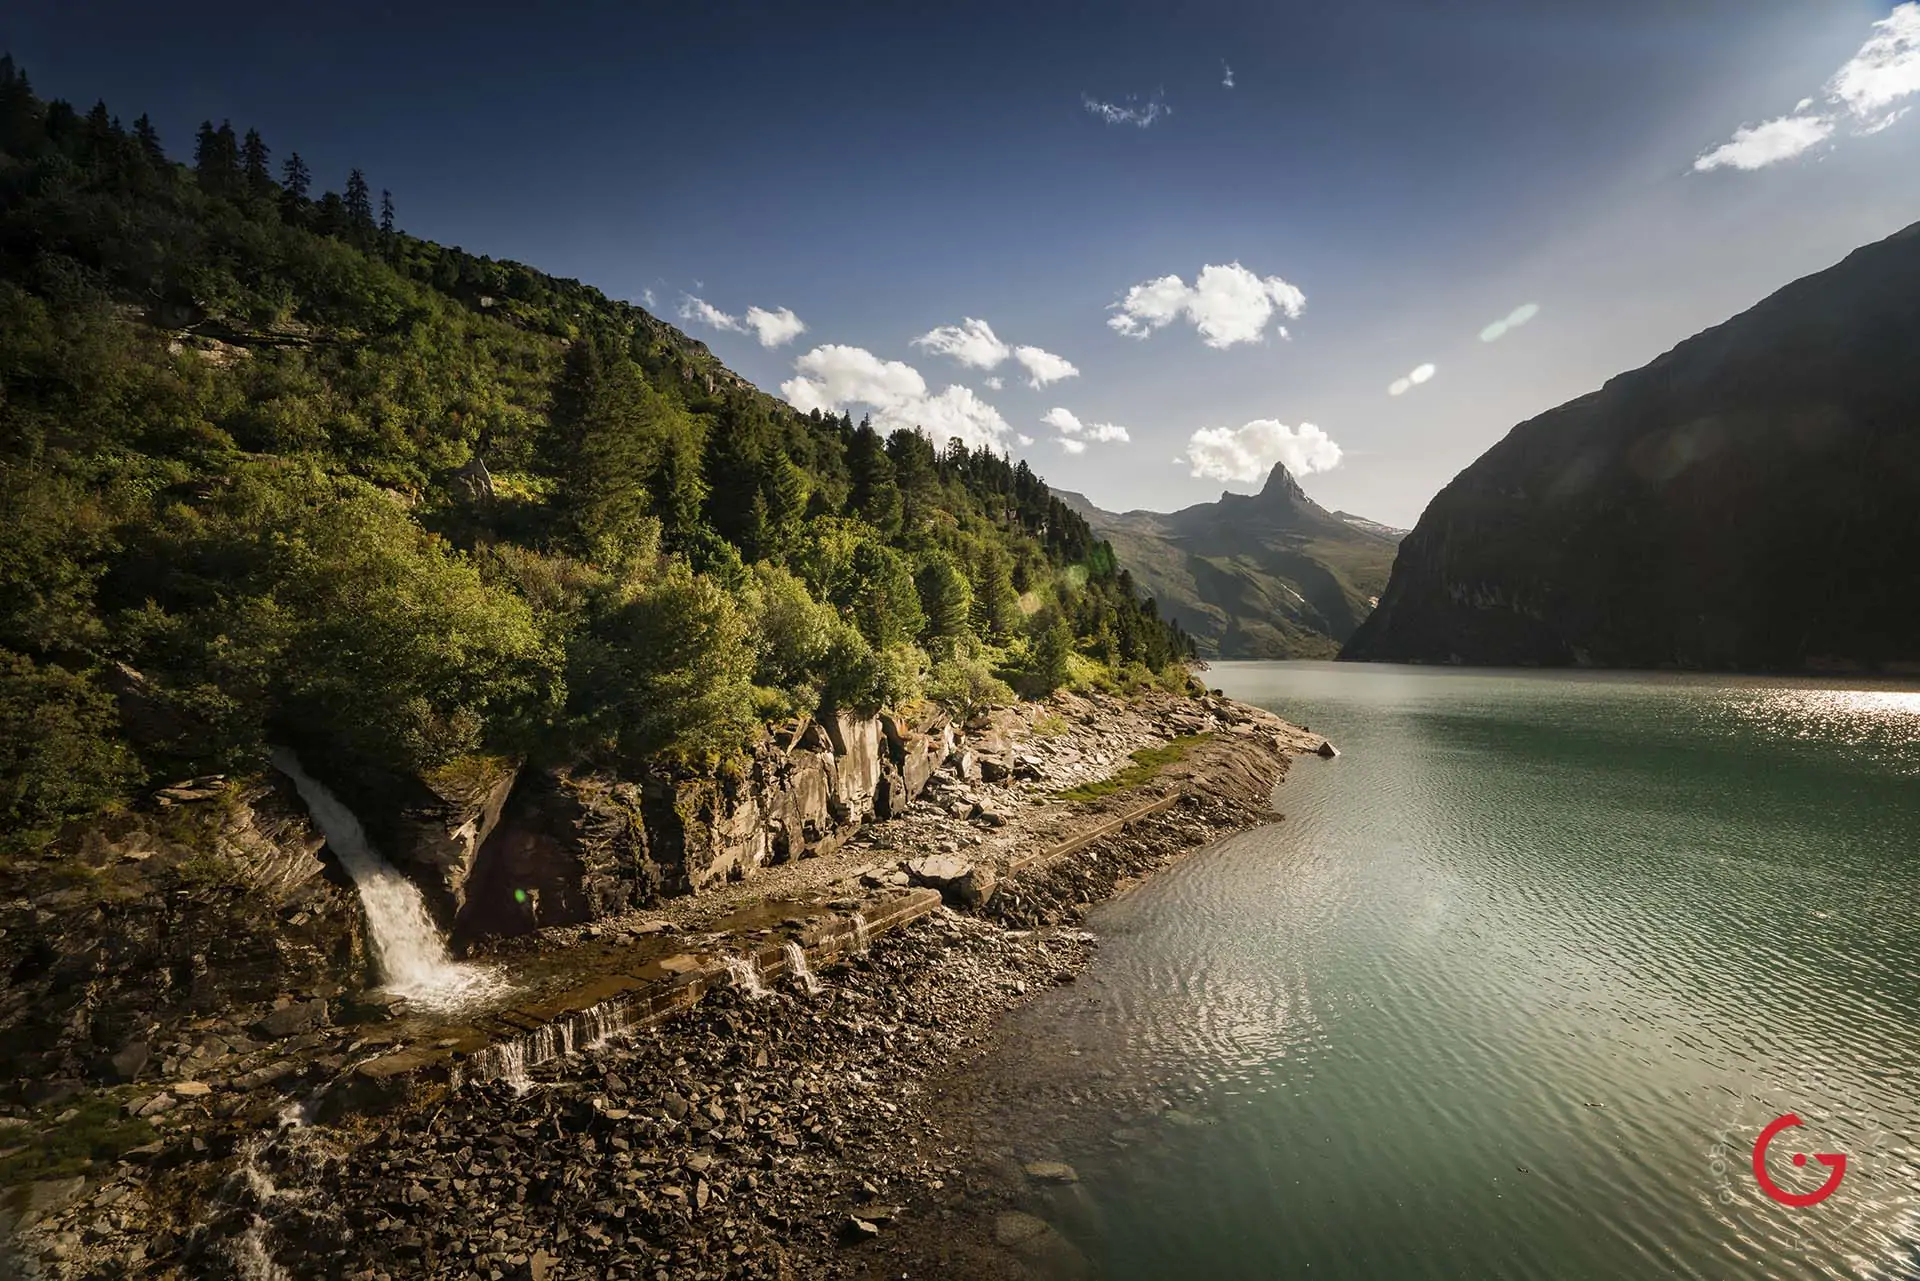 Zervreilasee near Vals, Switzerland - Travel Photographer and Switzerland Photography